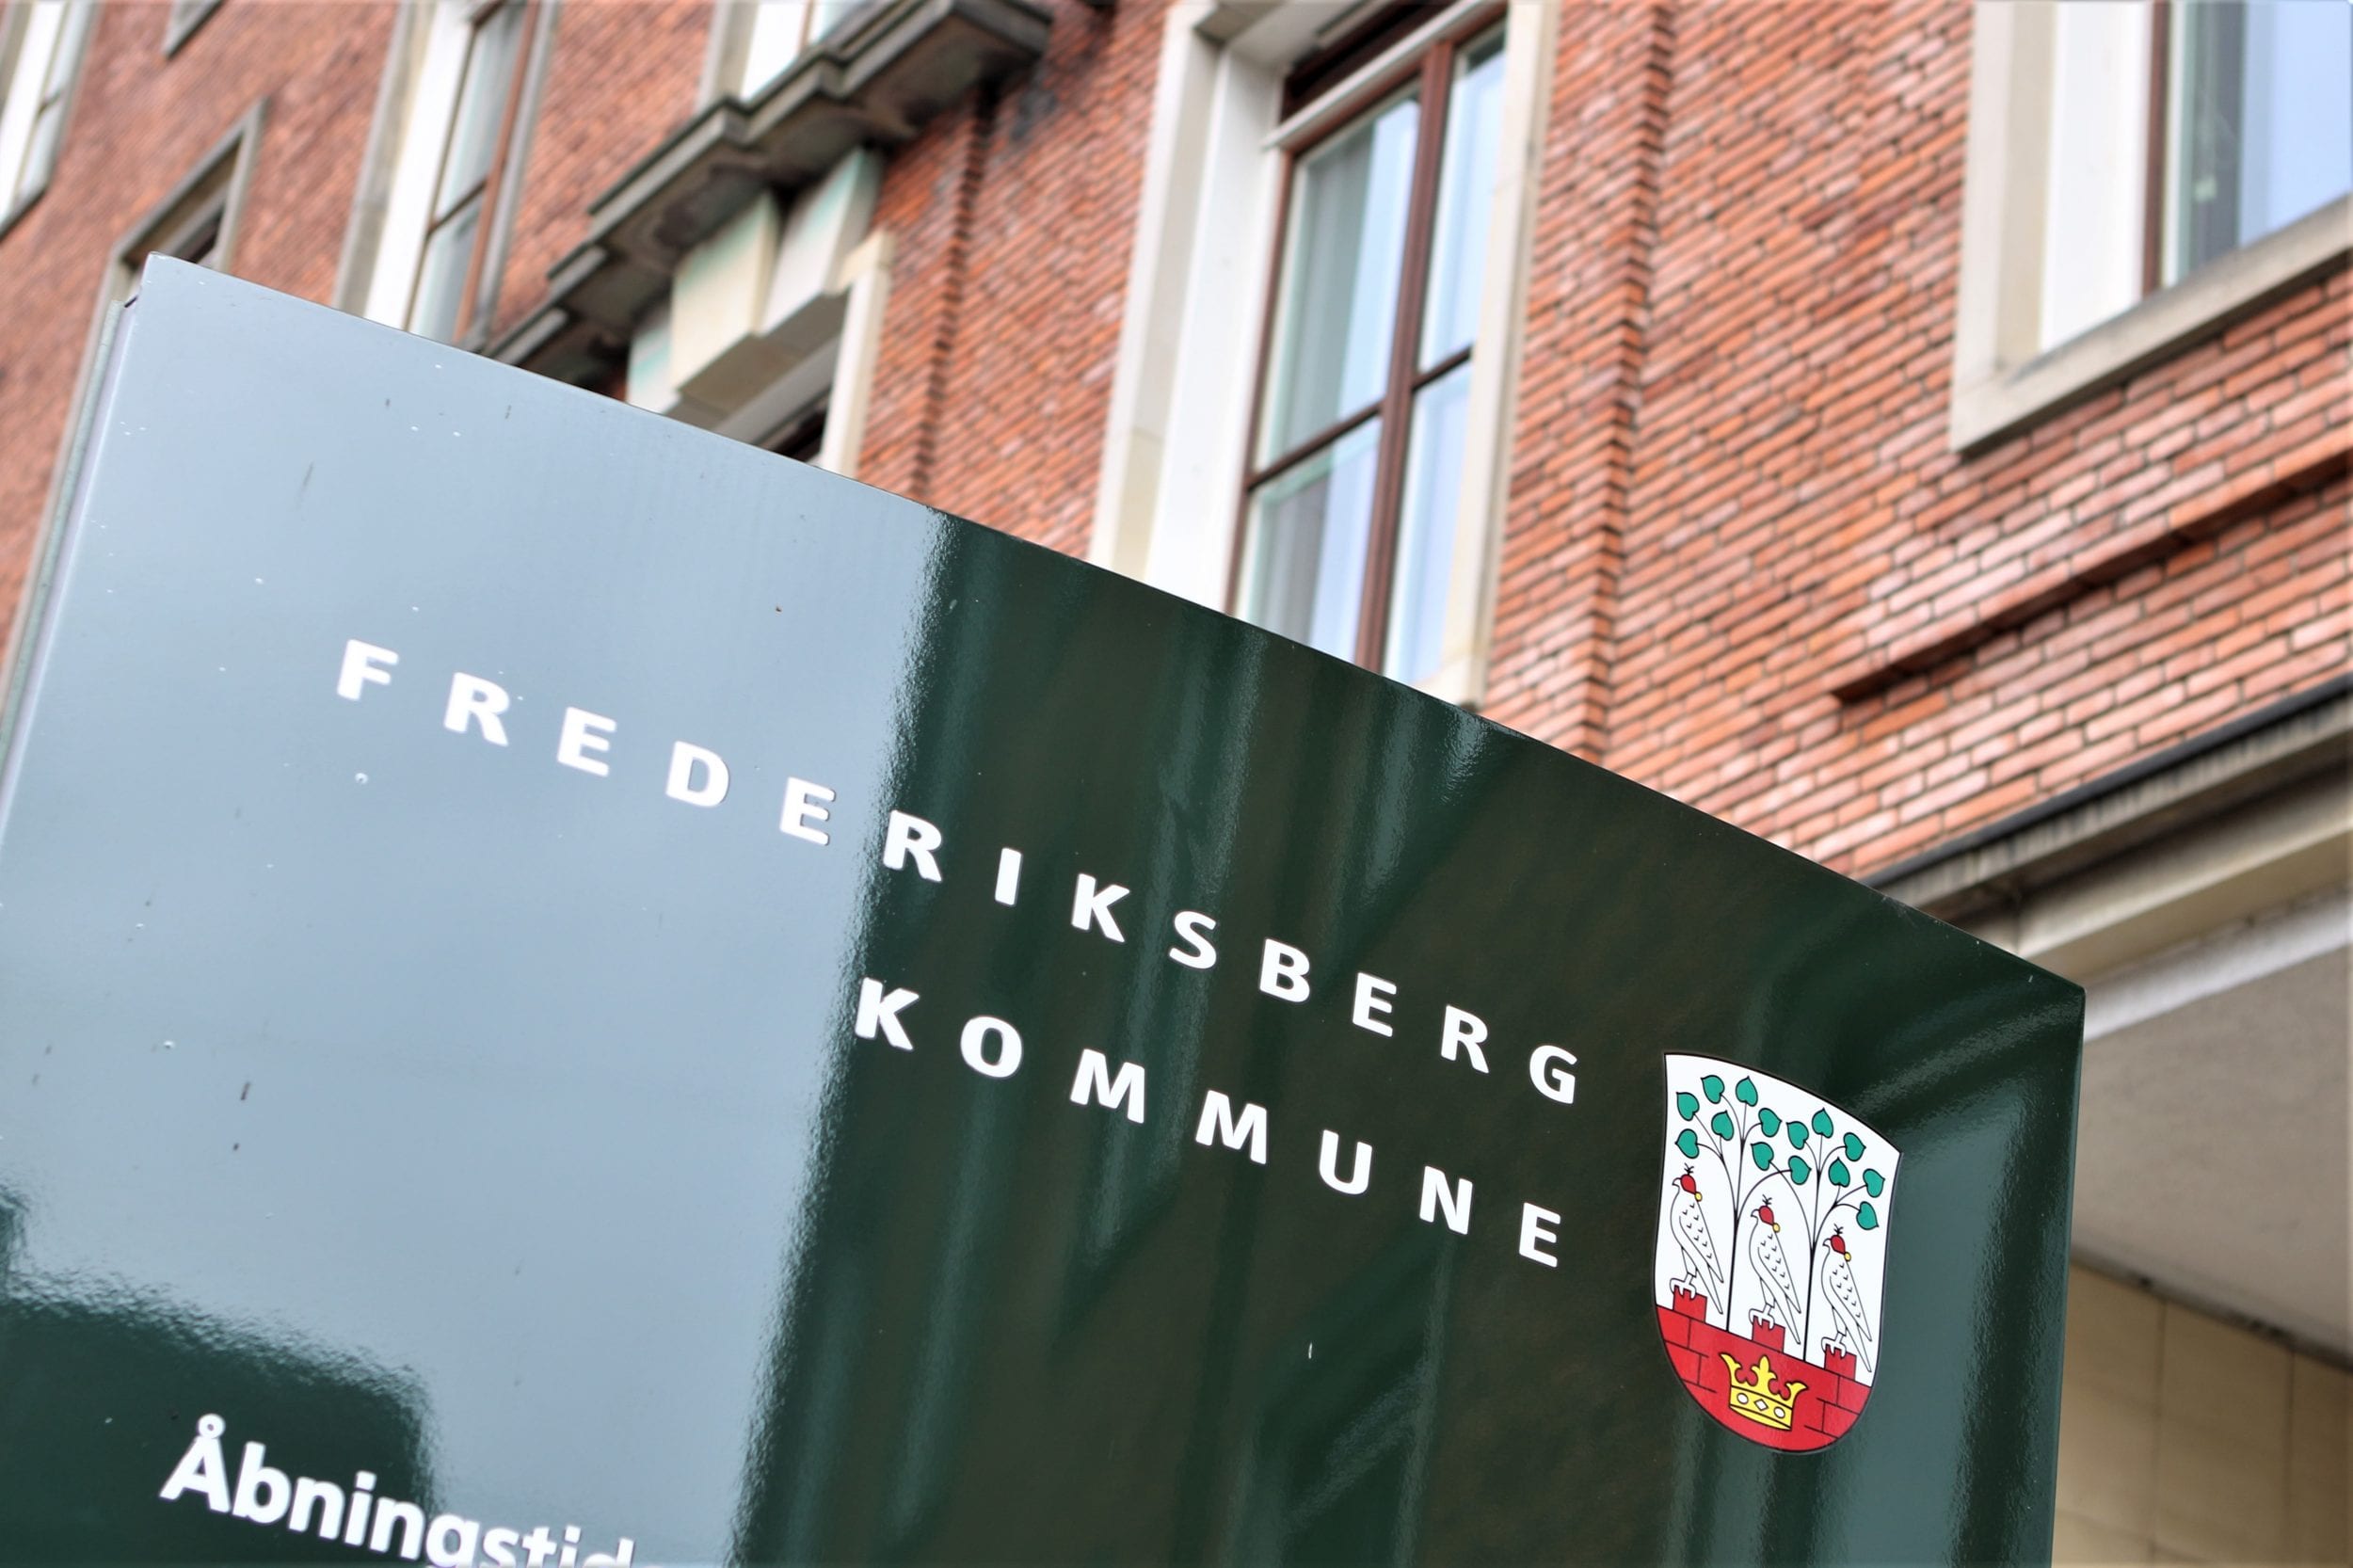 Frederiksbergs nye borgmester er klar til arbejdet